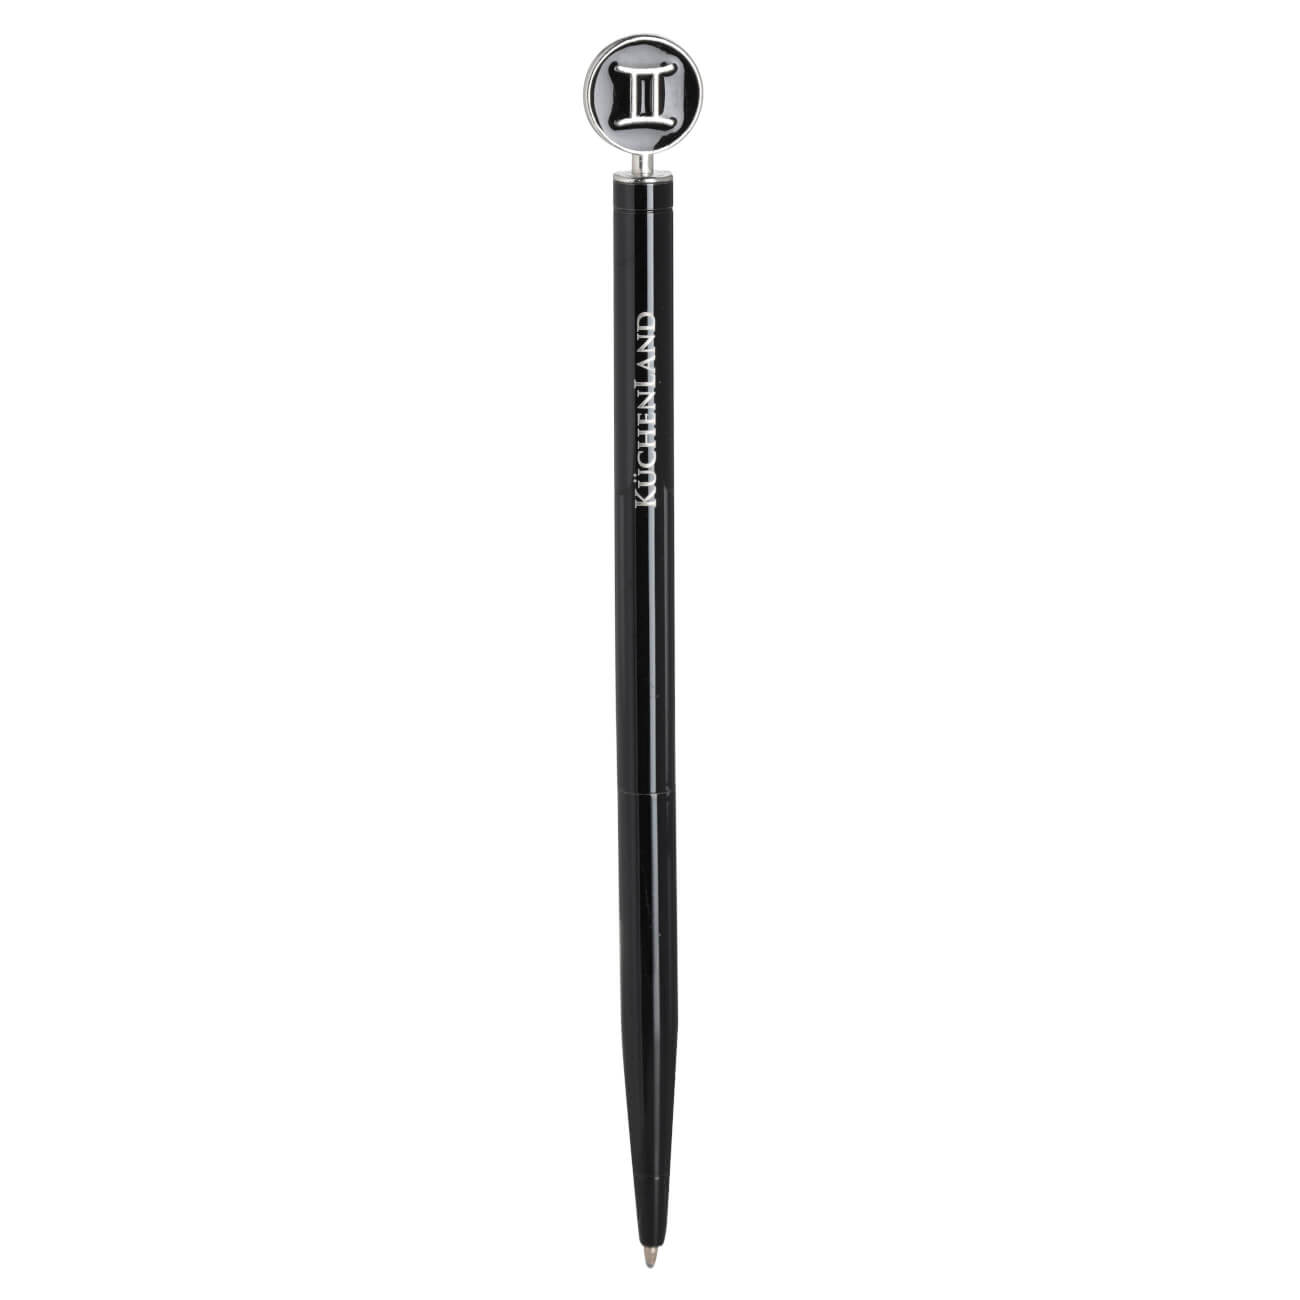 Ручка шариковая, 15 см, с фигуркой, сталь, черно-серебристая, Близнецы, Zodiac brass rollerball ручка